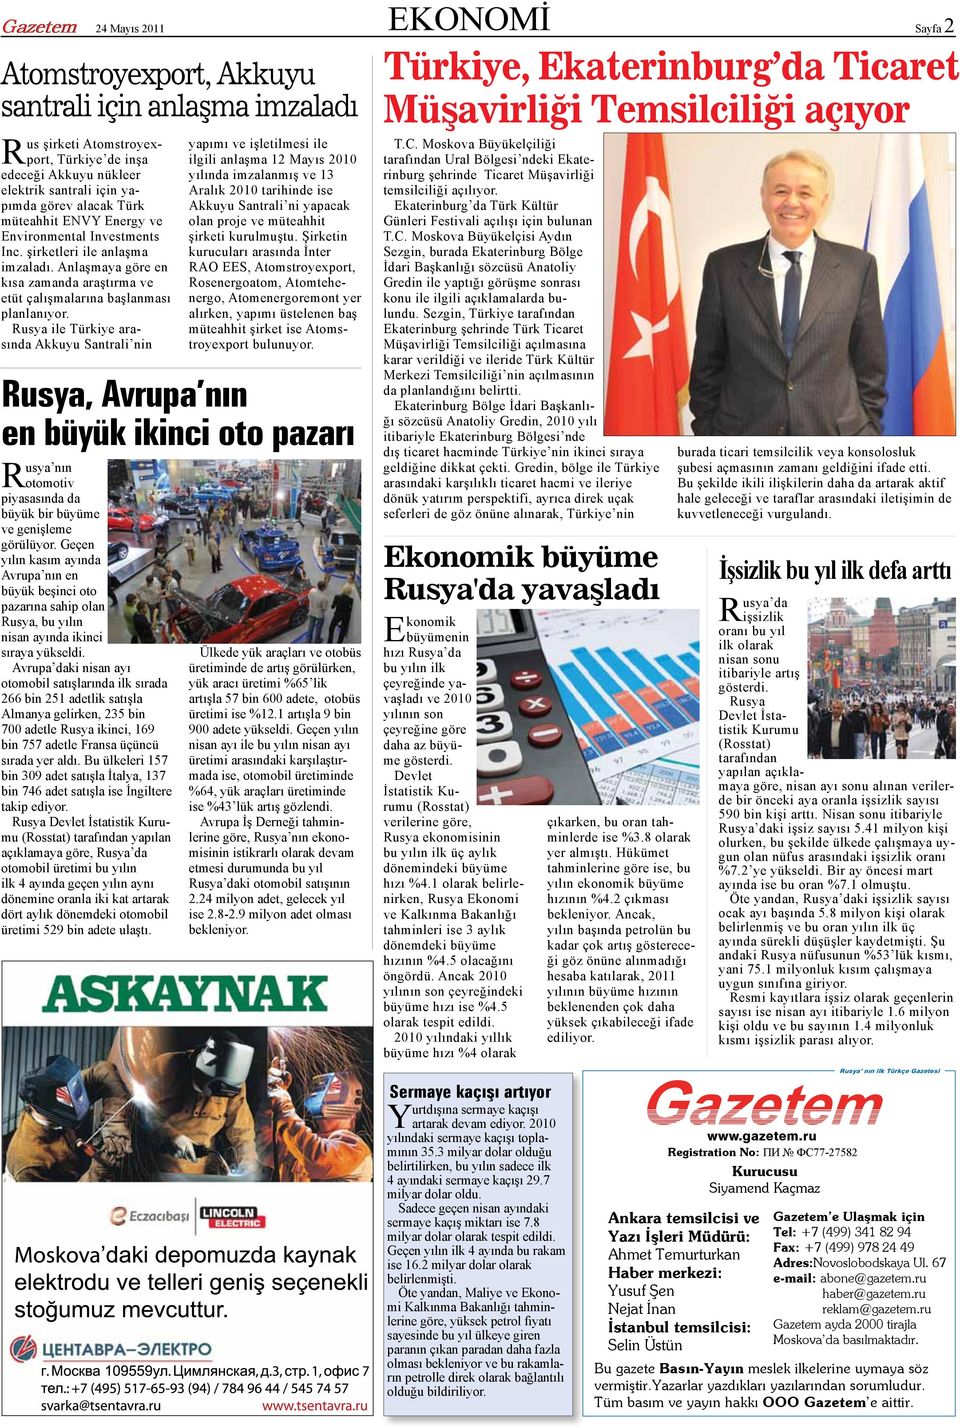 Rusya ile Türkiye arasında Akkuyu Santrali nin yapımı ve işletilmesi ile ilgili anlaşma 12 Mayıs 2010 yılında imzalanmış ve 13 Aralık 2010 tarihinde ise Akkuyu Santrali ni yapacak olan proje ve